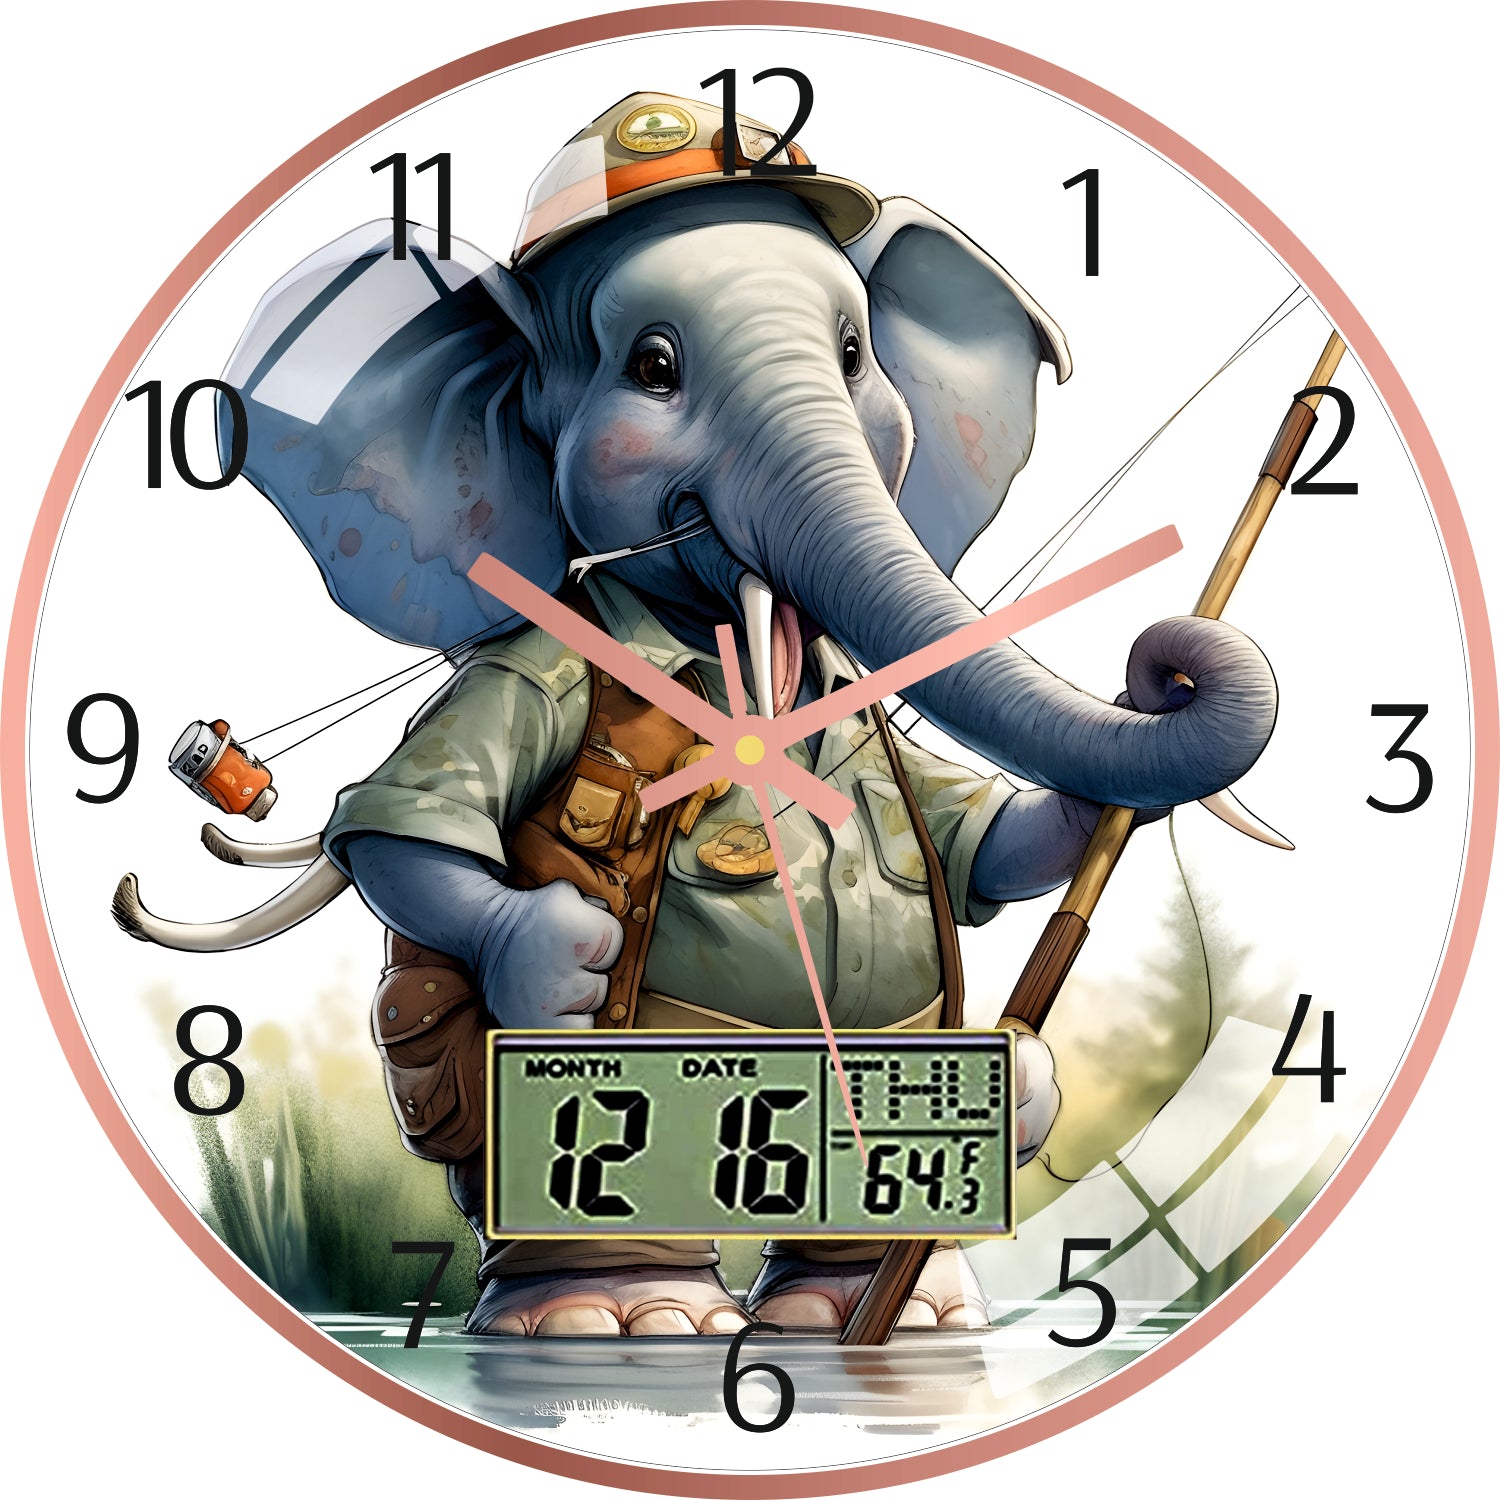 Cartoon Elephant Wall Clock